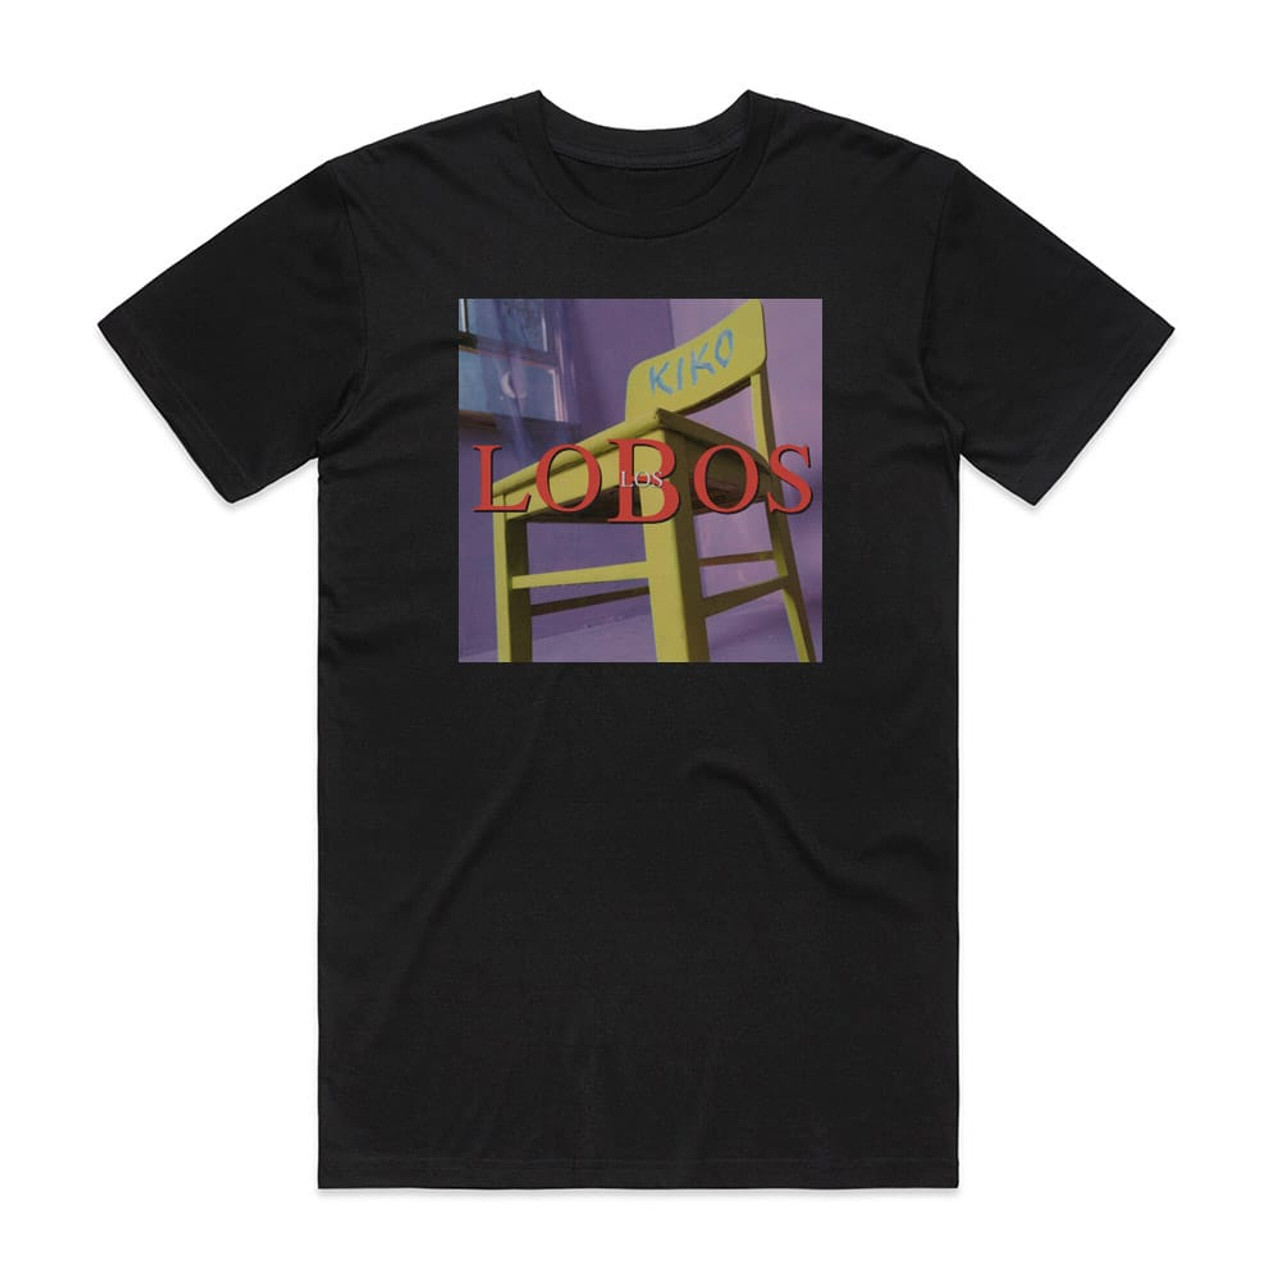 Los Lobos Kiko Album Cover T-Shirt Black